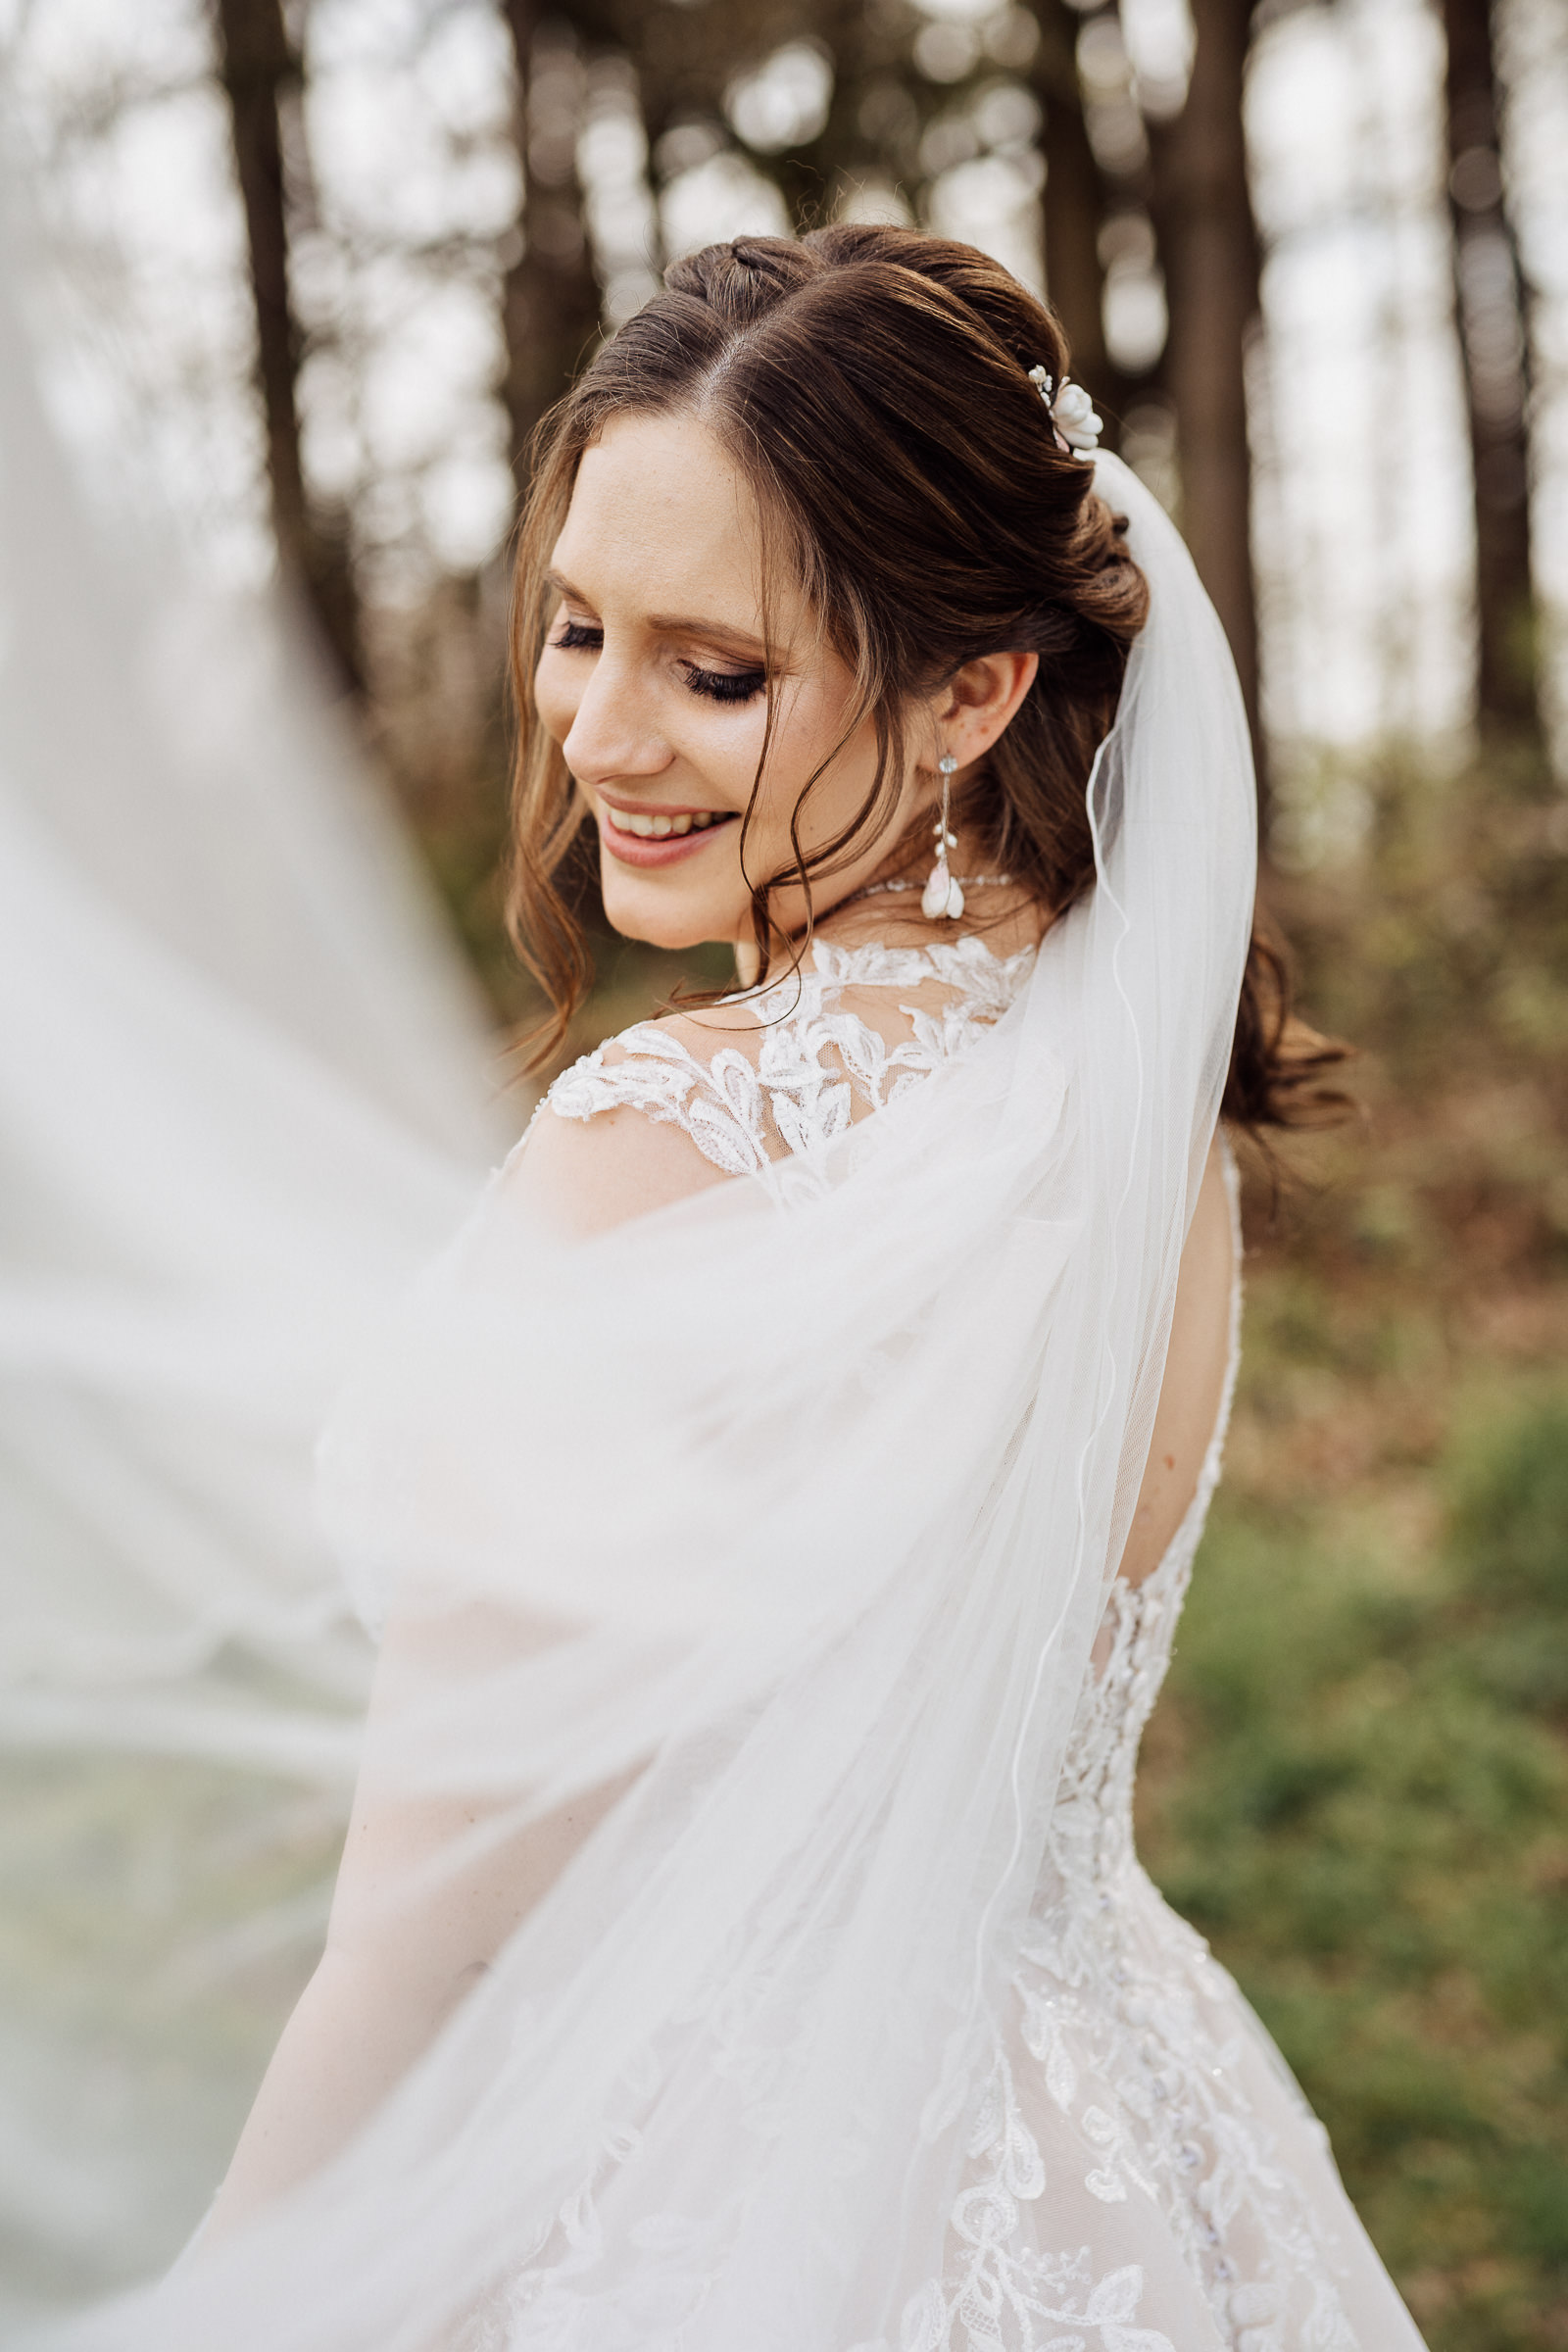 Es ist eine Braut von hinten zu sehen. Sie steht im Wald und lächelt über ihre linke Schulter Richtung Kamera. Im Vordergrund ist ihr Schleier zu sehen, der im Wind fliegt.